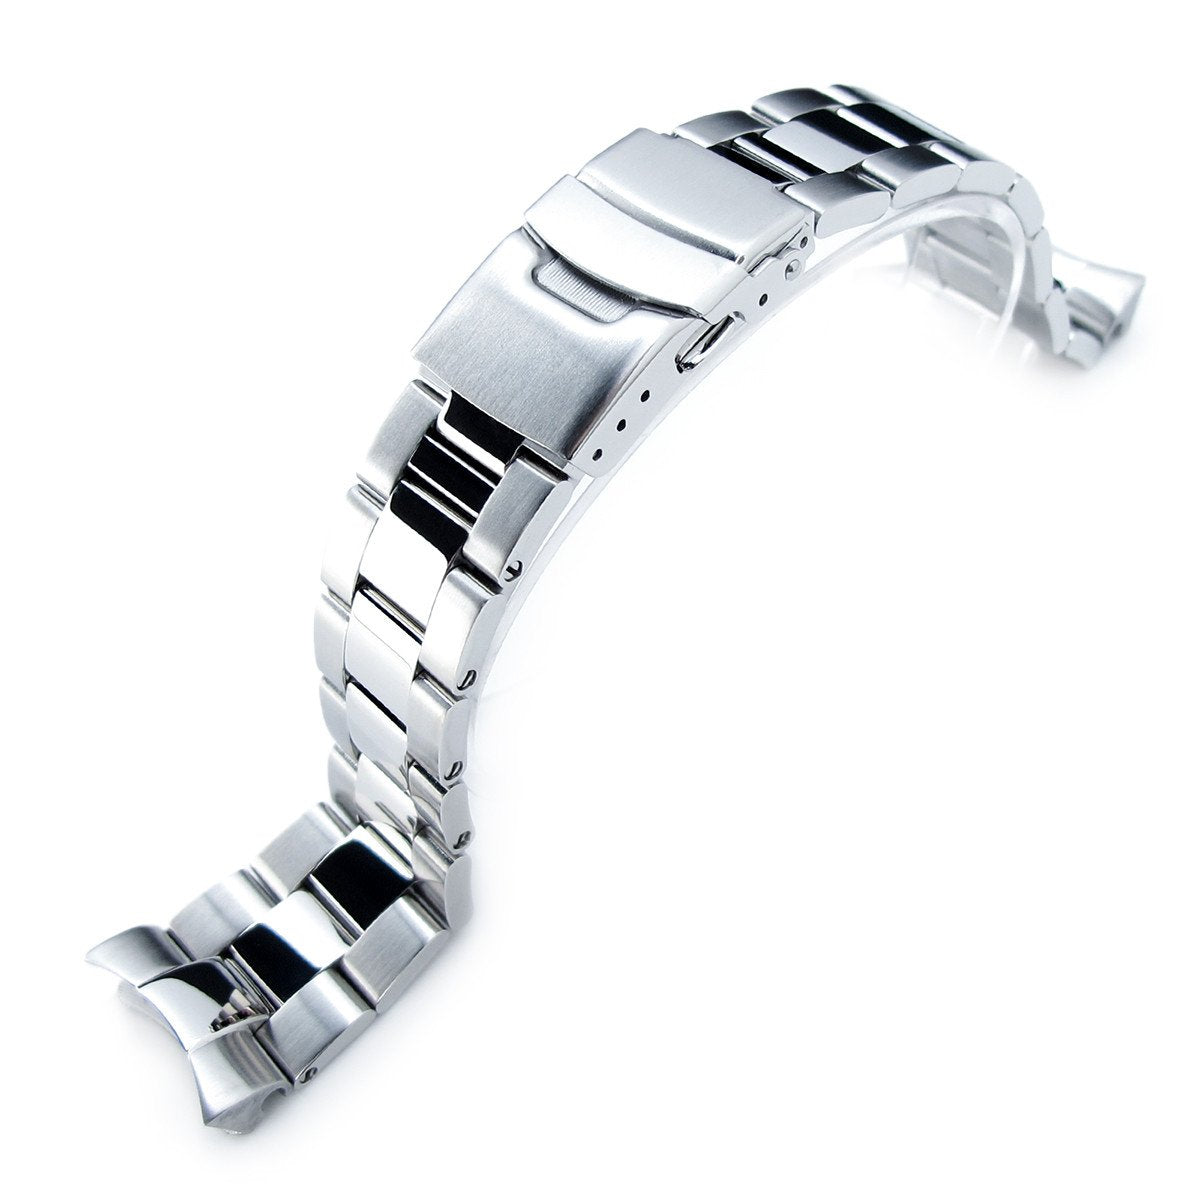 Литой браслет для часов. Антистатический металлический браслет Doka-e2. 316l Stainless Steel. Стальной браслет для смарт часов 22мм. Металлический браслет для смарт часов 22 мм.